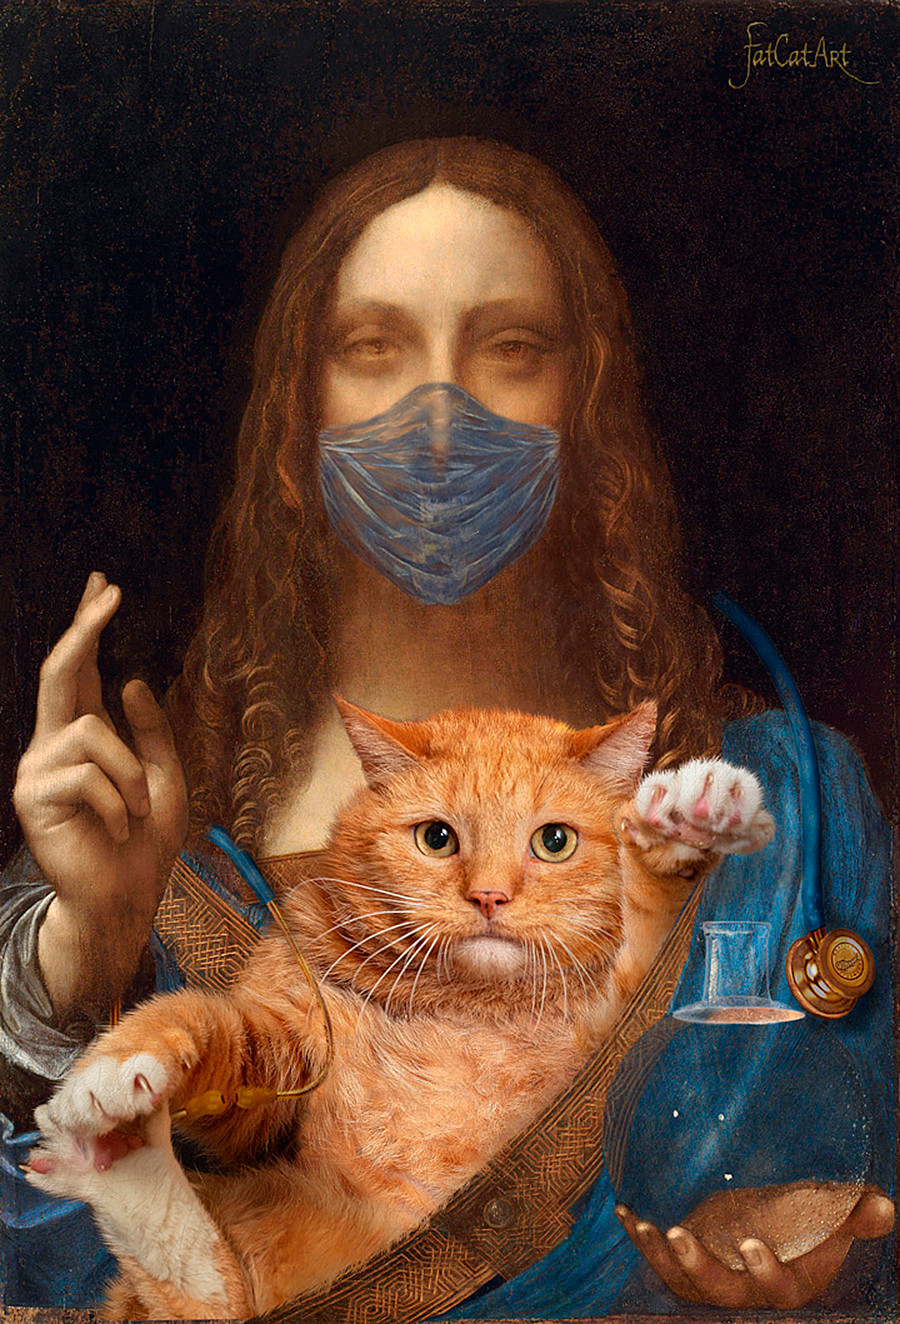  Leonardo da Vinci, ‘Savior of the World with his cat’